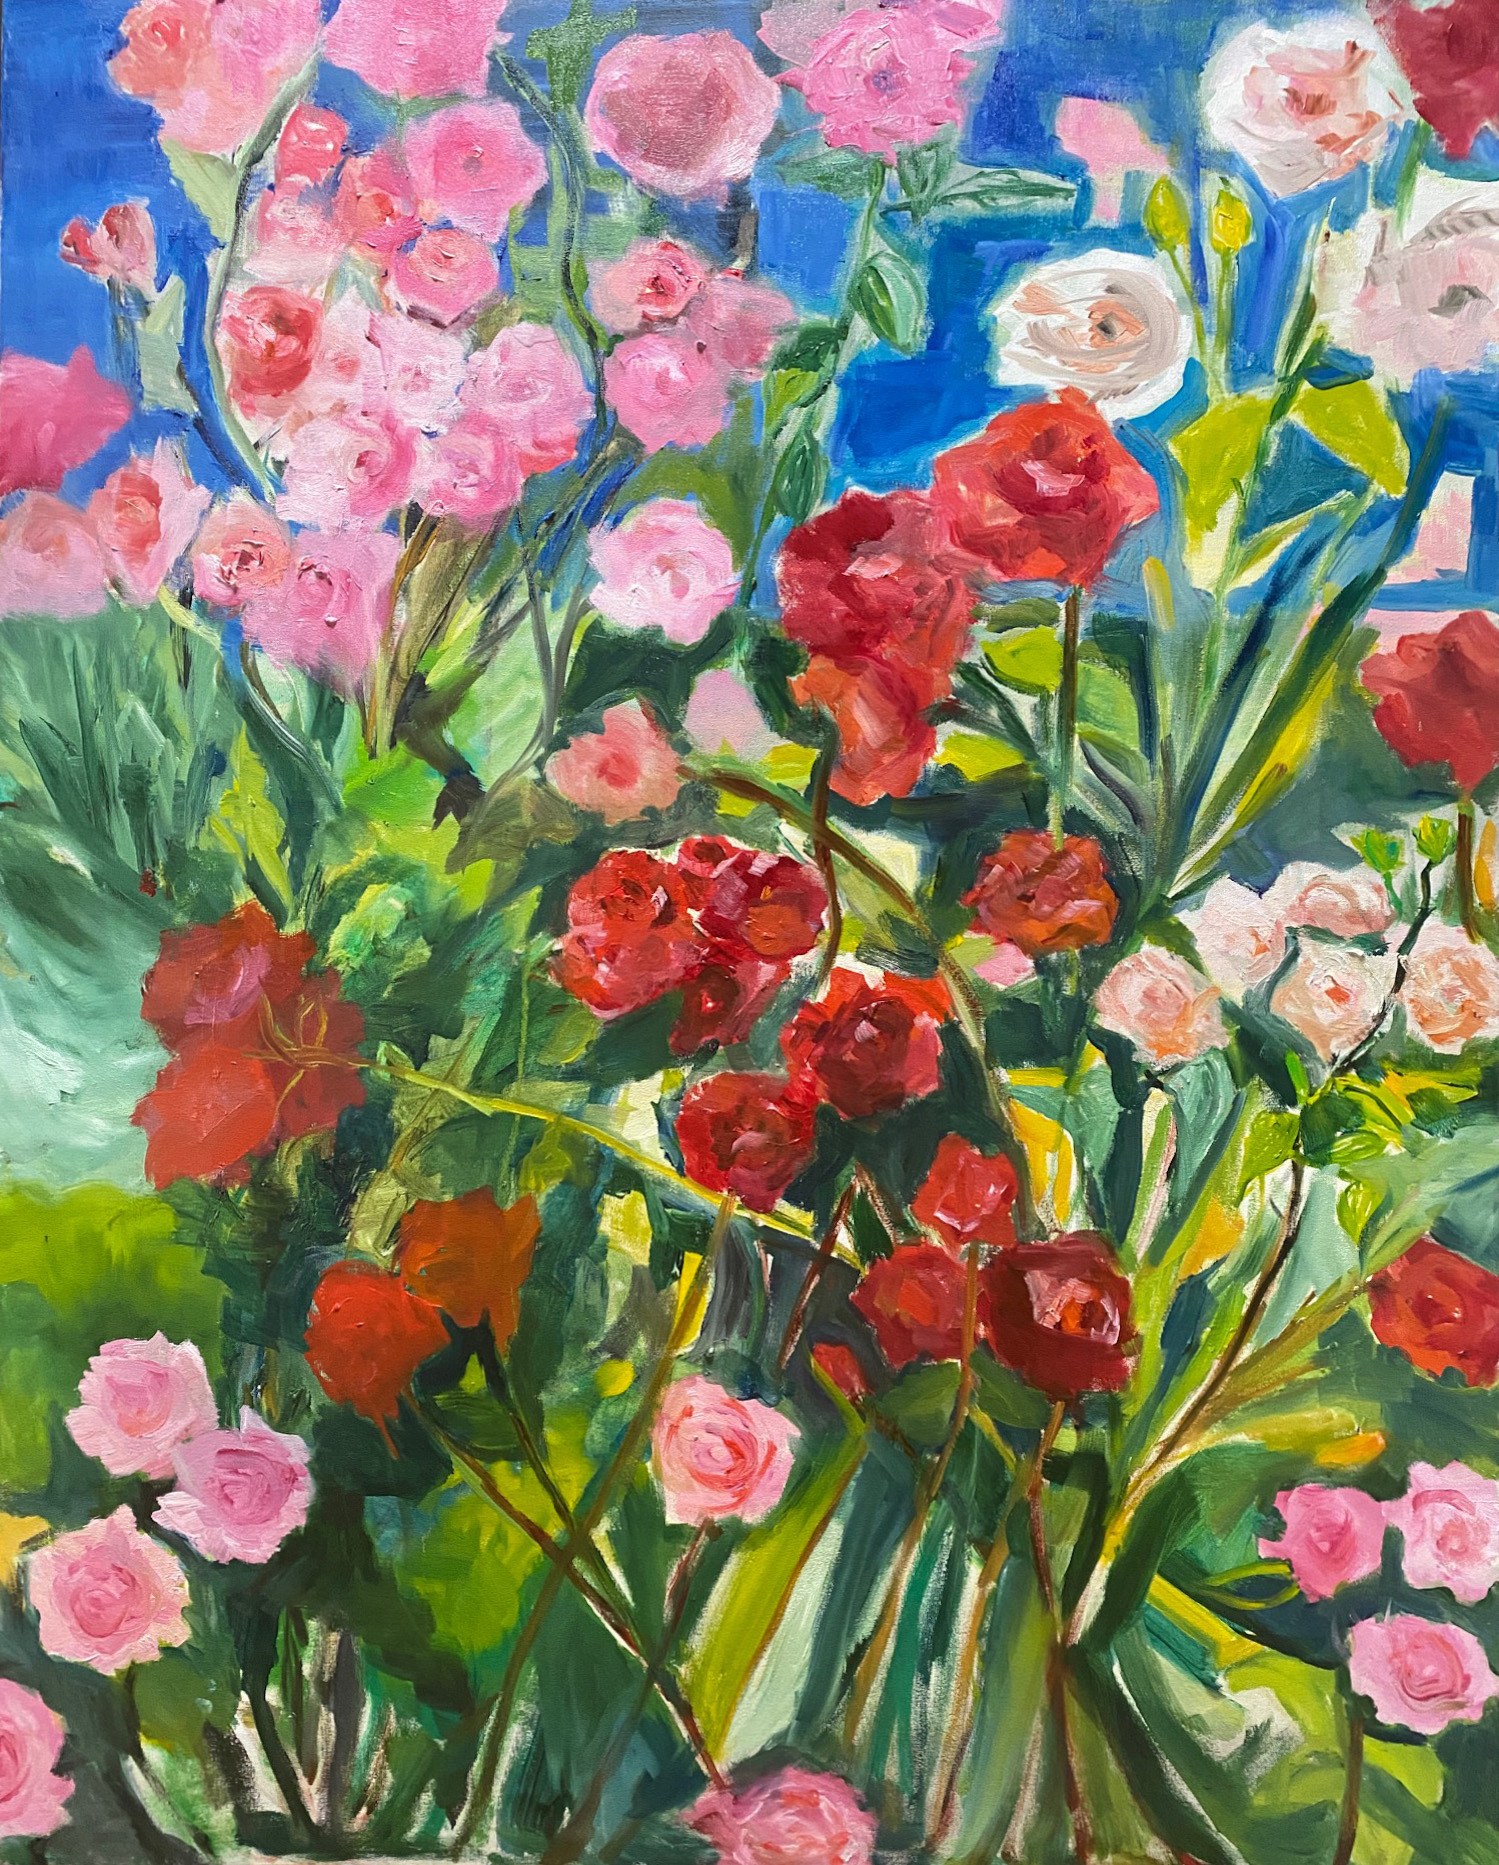 Petra Feber_Pleinair_Rose garden 2021_80x100_oil on canvas